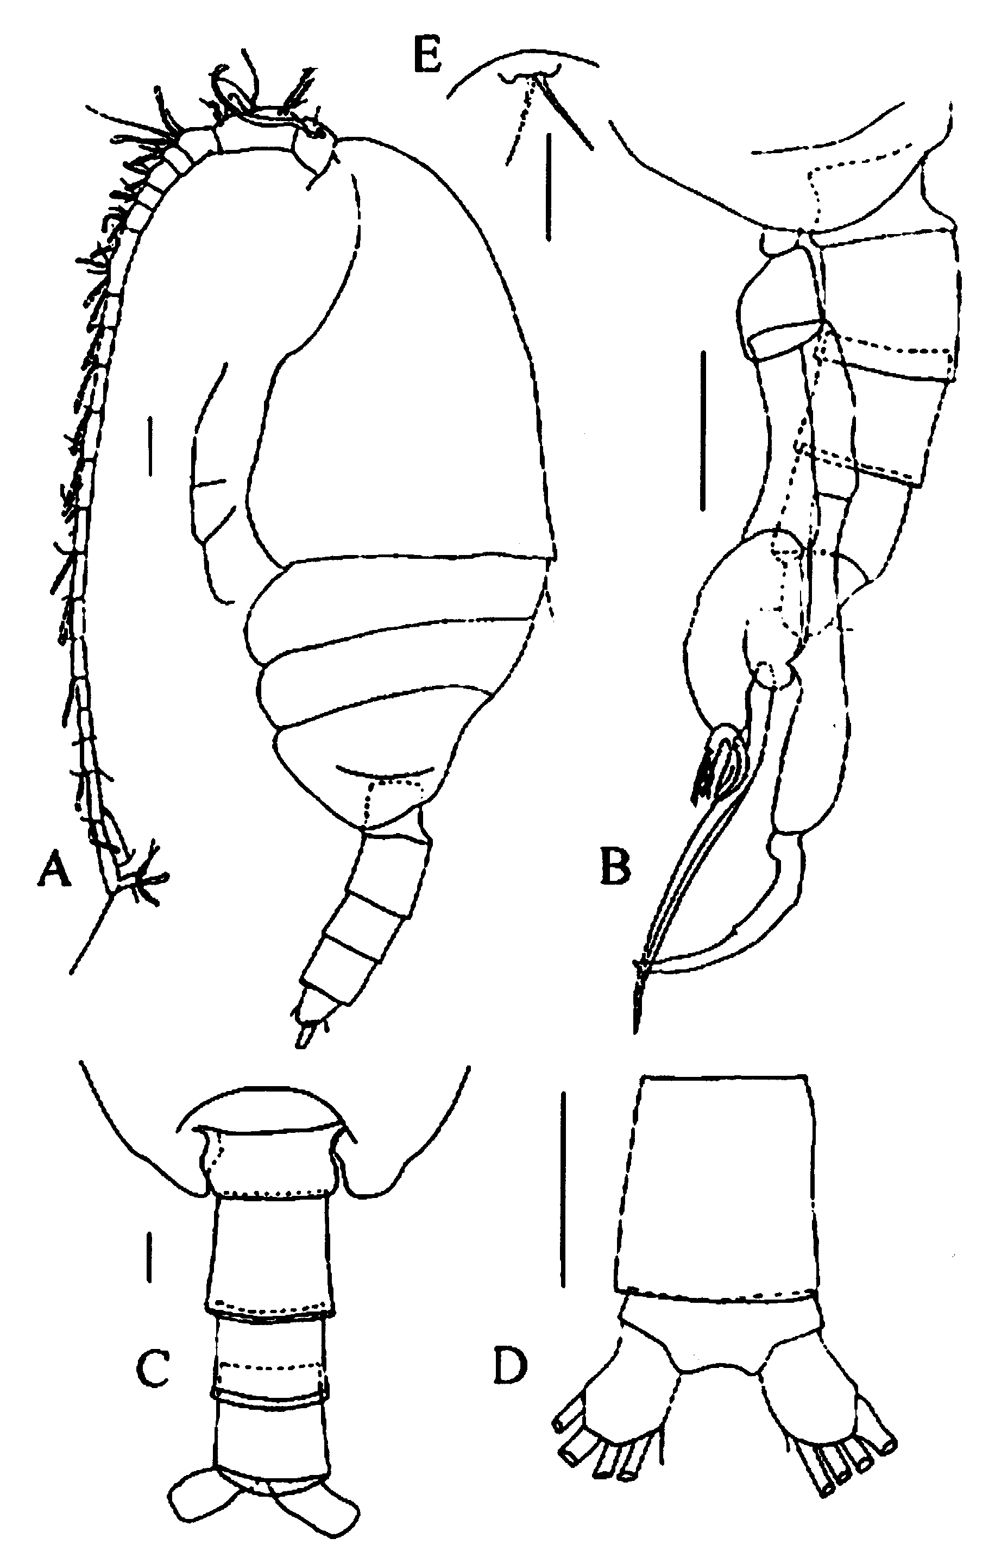 Espce Tharybis juhlae - Planche 5 de figures morphologiques